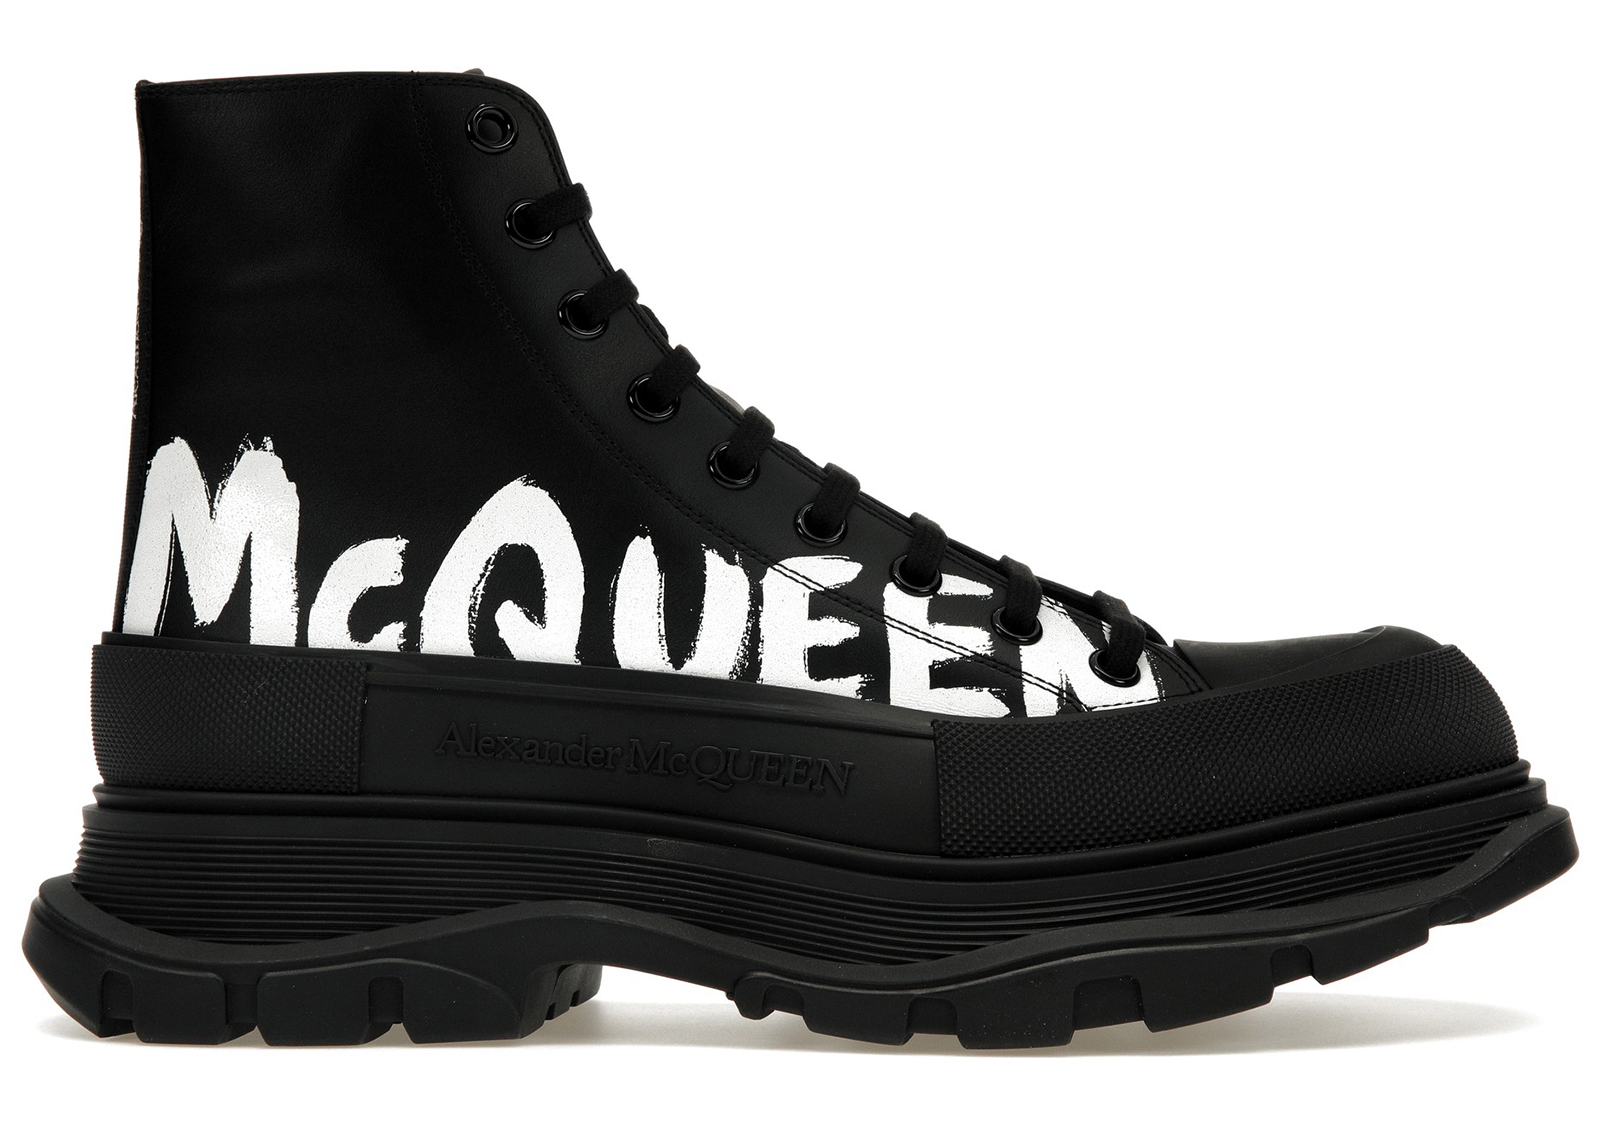 Alexander McQueen Tread Slick Boot Leather Graffiti Black White